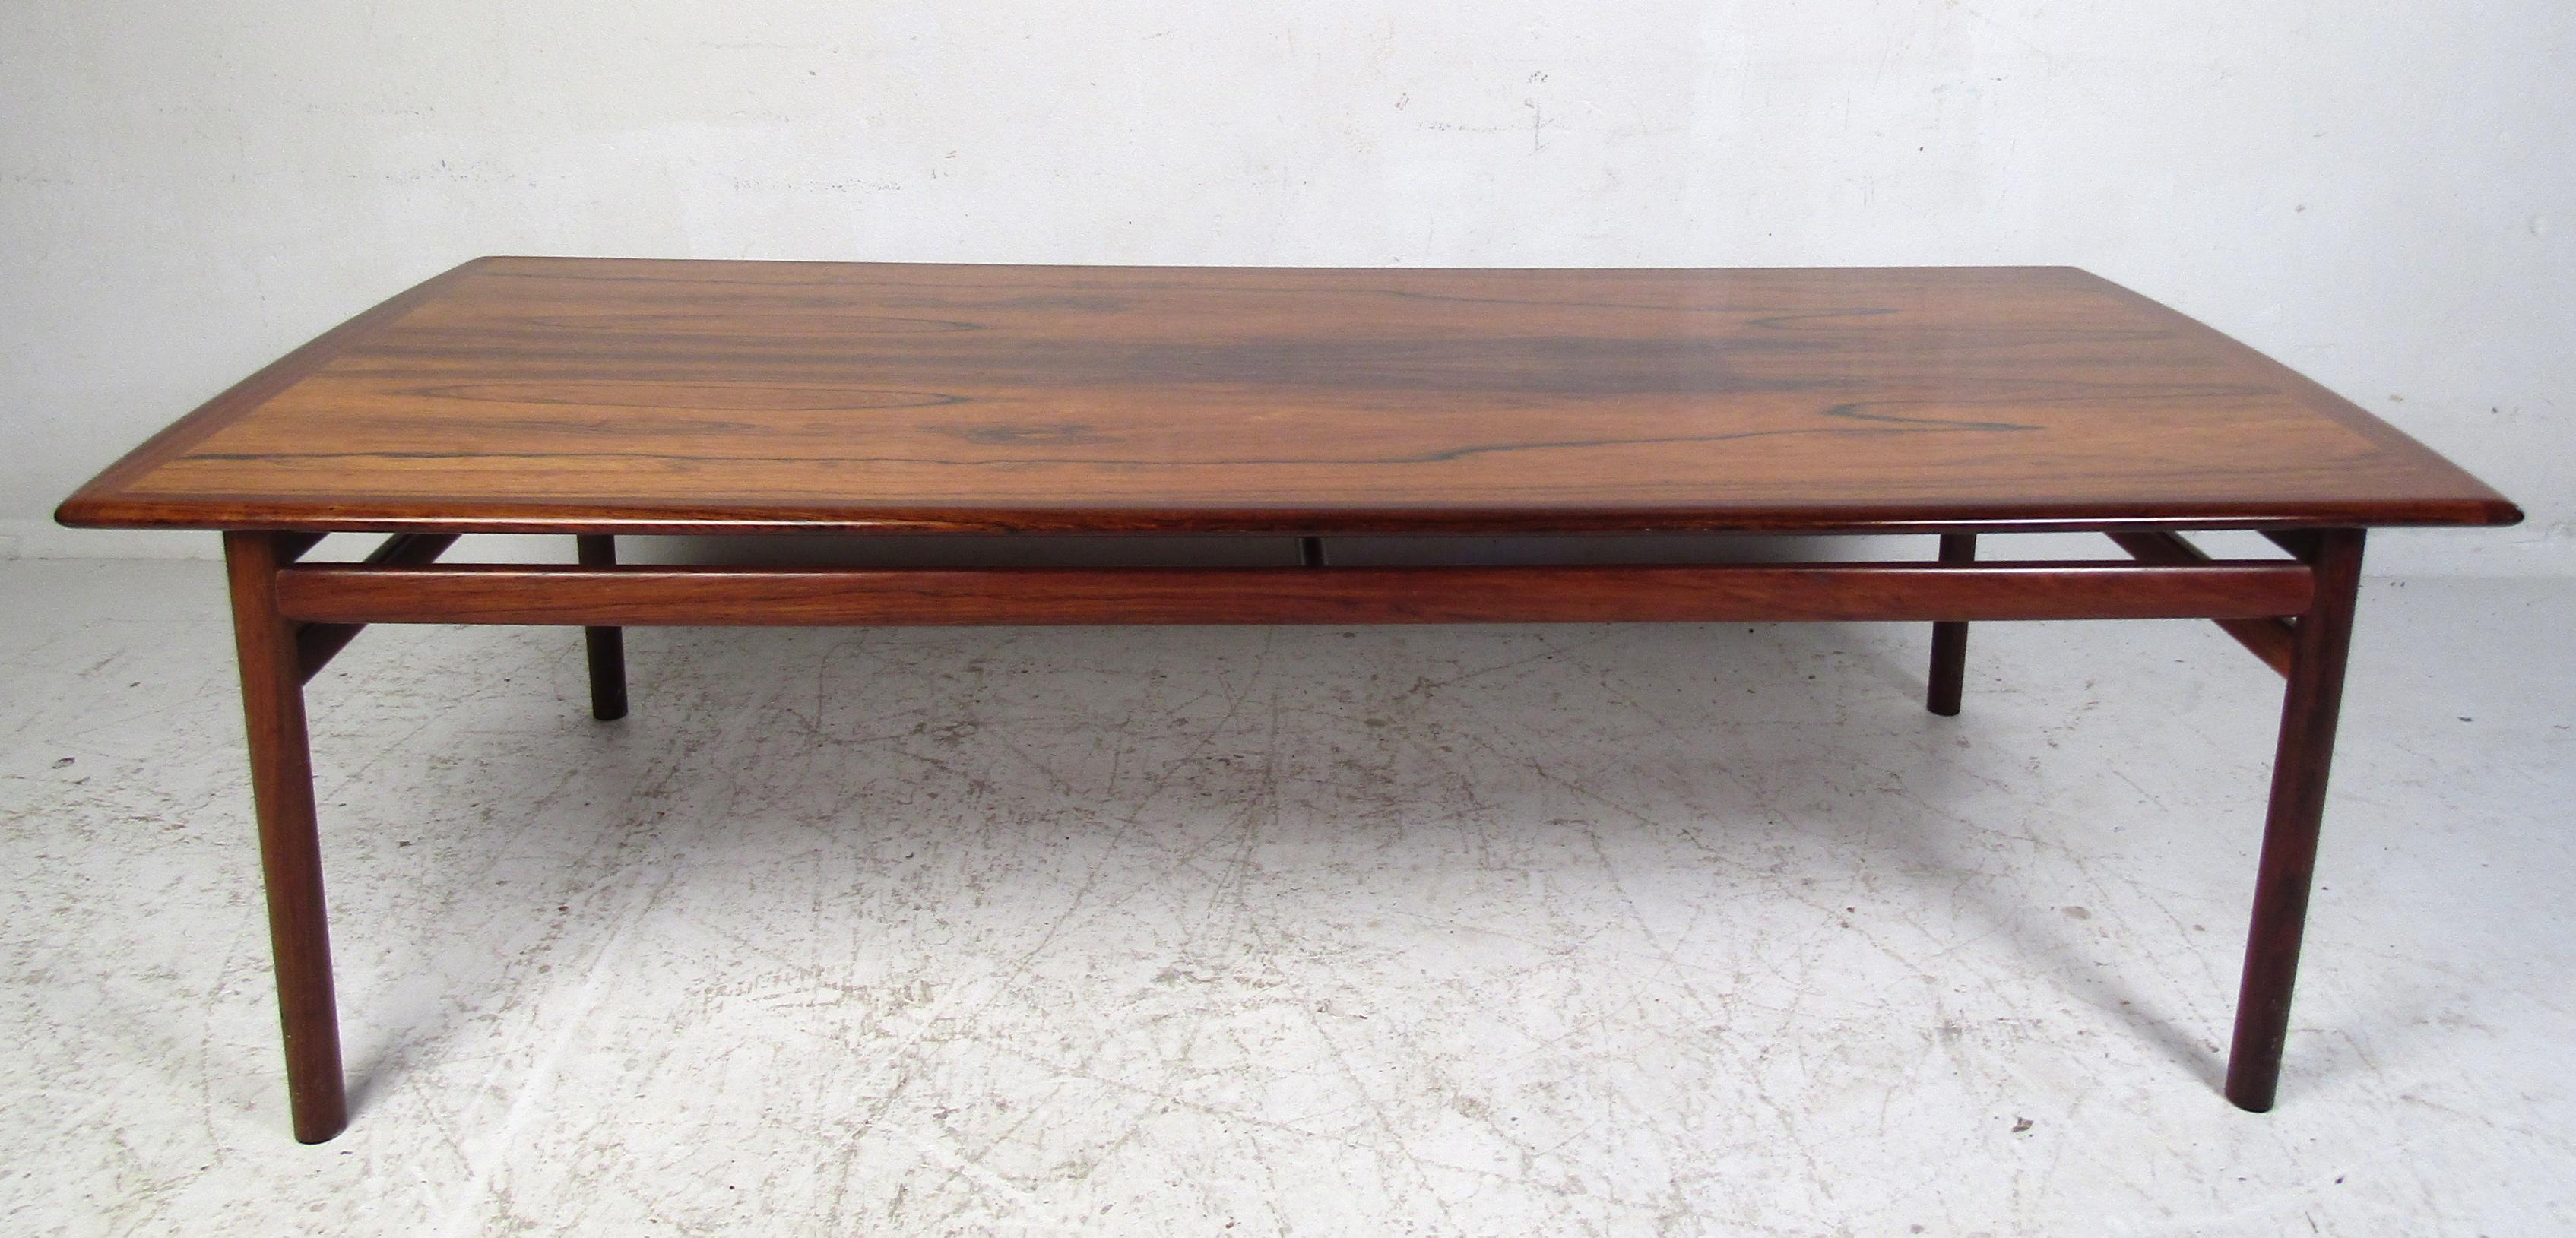 Elégante table basse moderne danoise en bois de rose avec un beau grain de bois partout. Cette table basse rectangulaire vintage possède des pieds cylindriques reliés par des brancards assurant une solidité maximale. L'ajout parfait à toute maison,